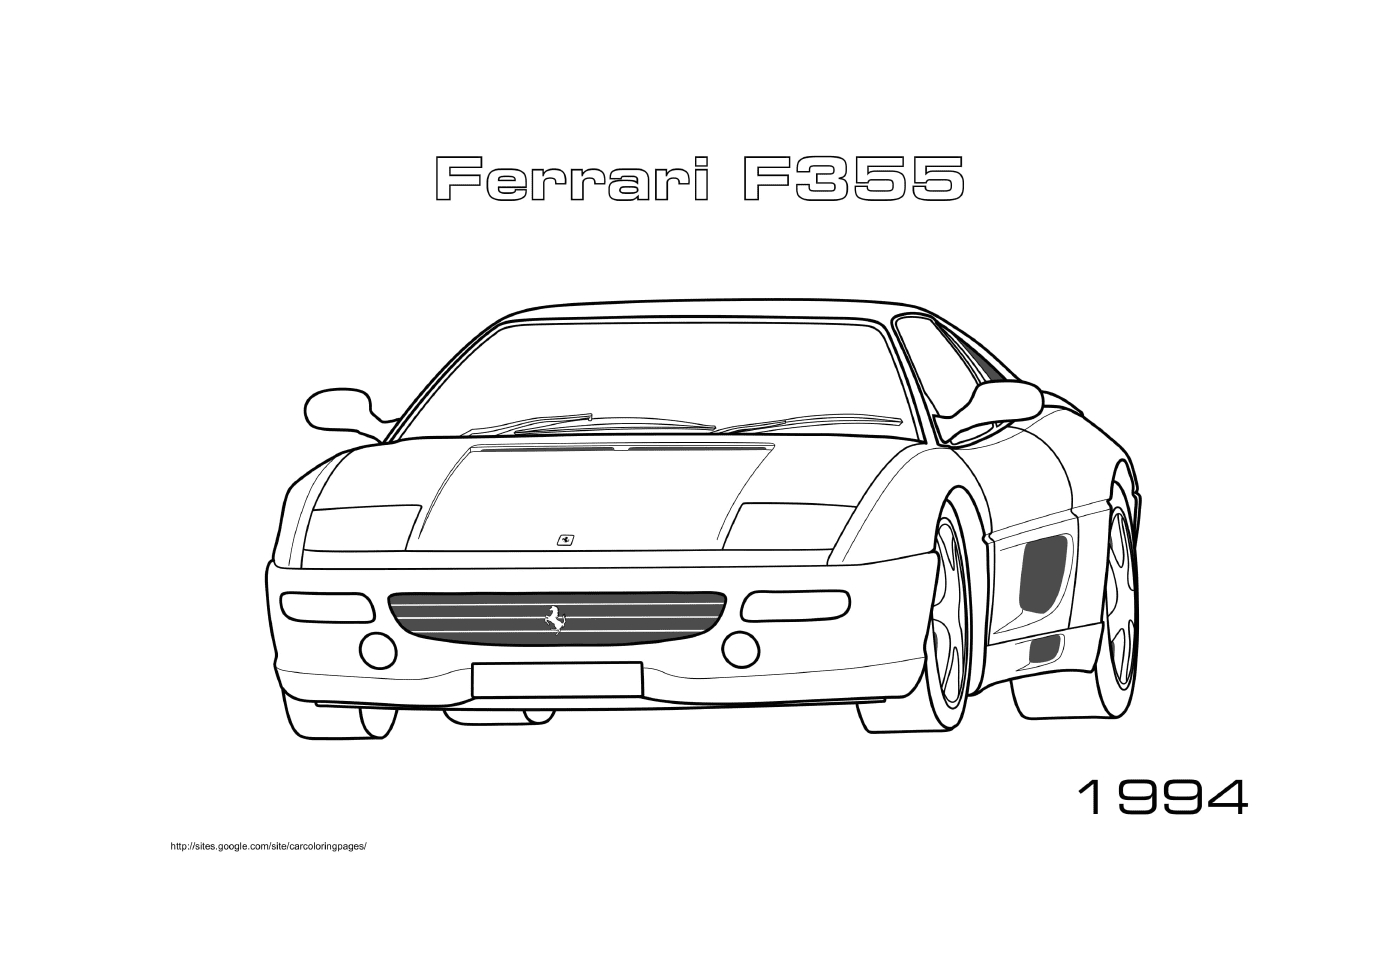  फेरी कार F35 1994 